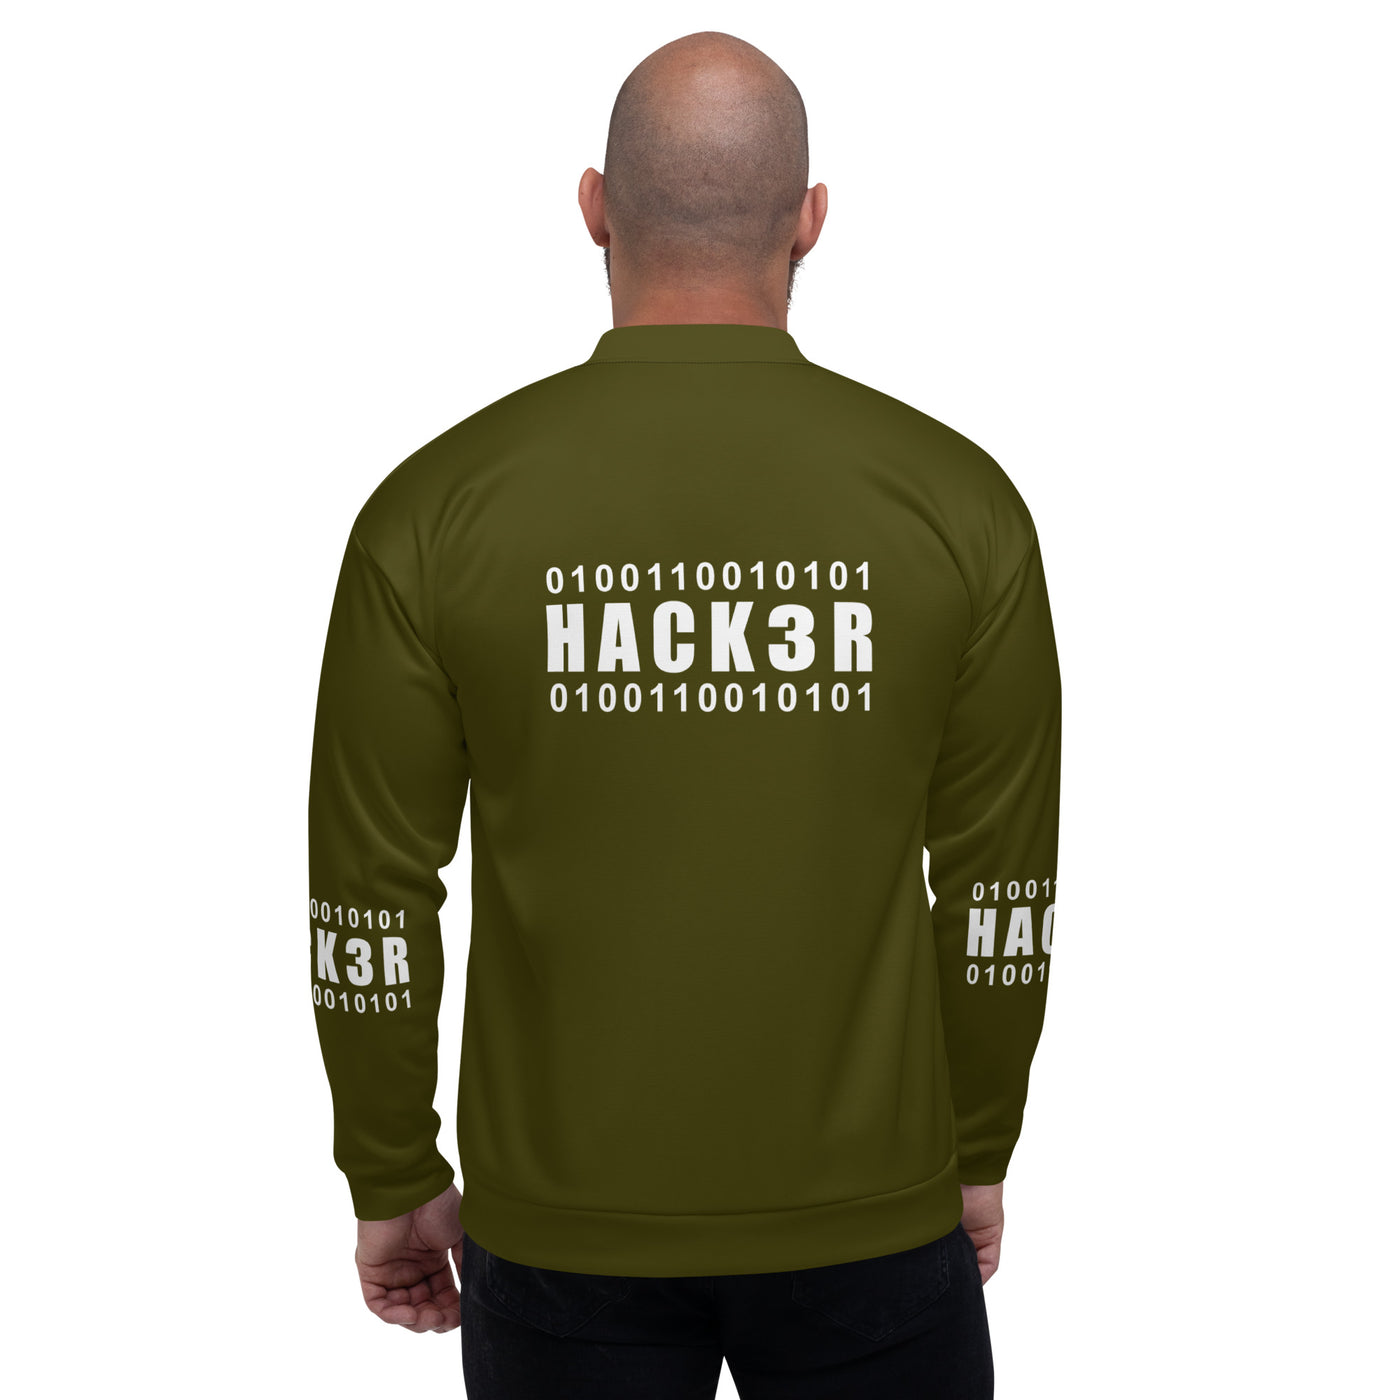 0100110010101 Hack3r - Unisex Bomber Jacket